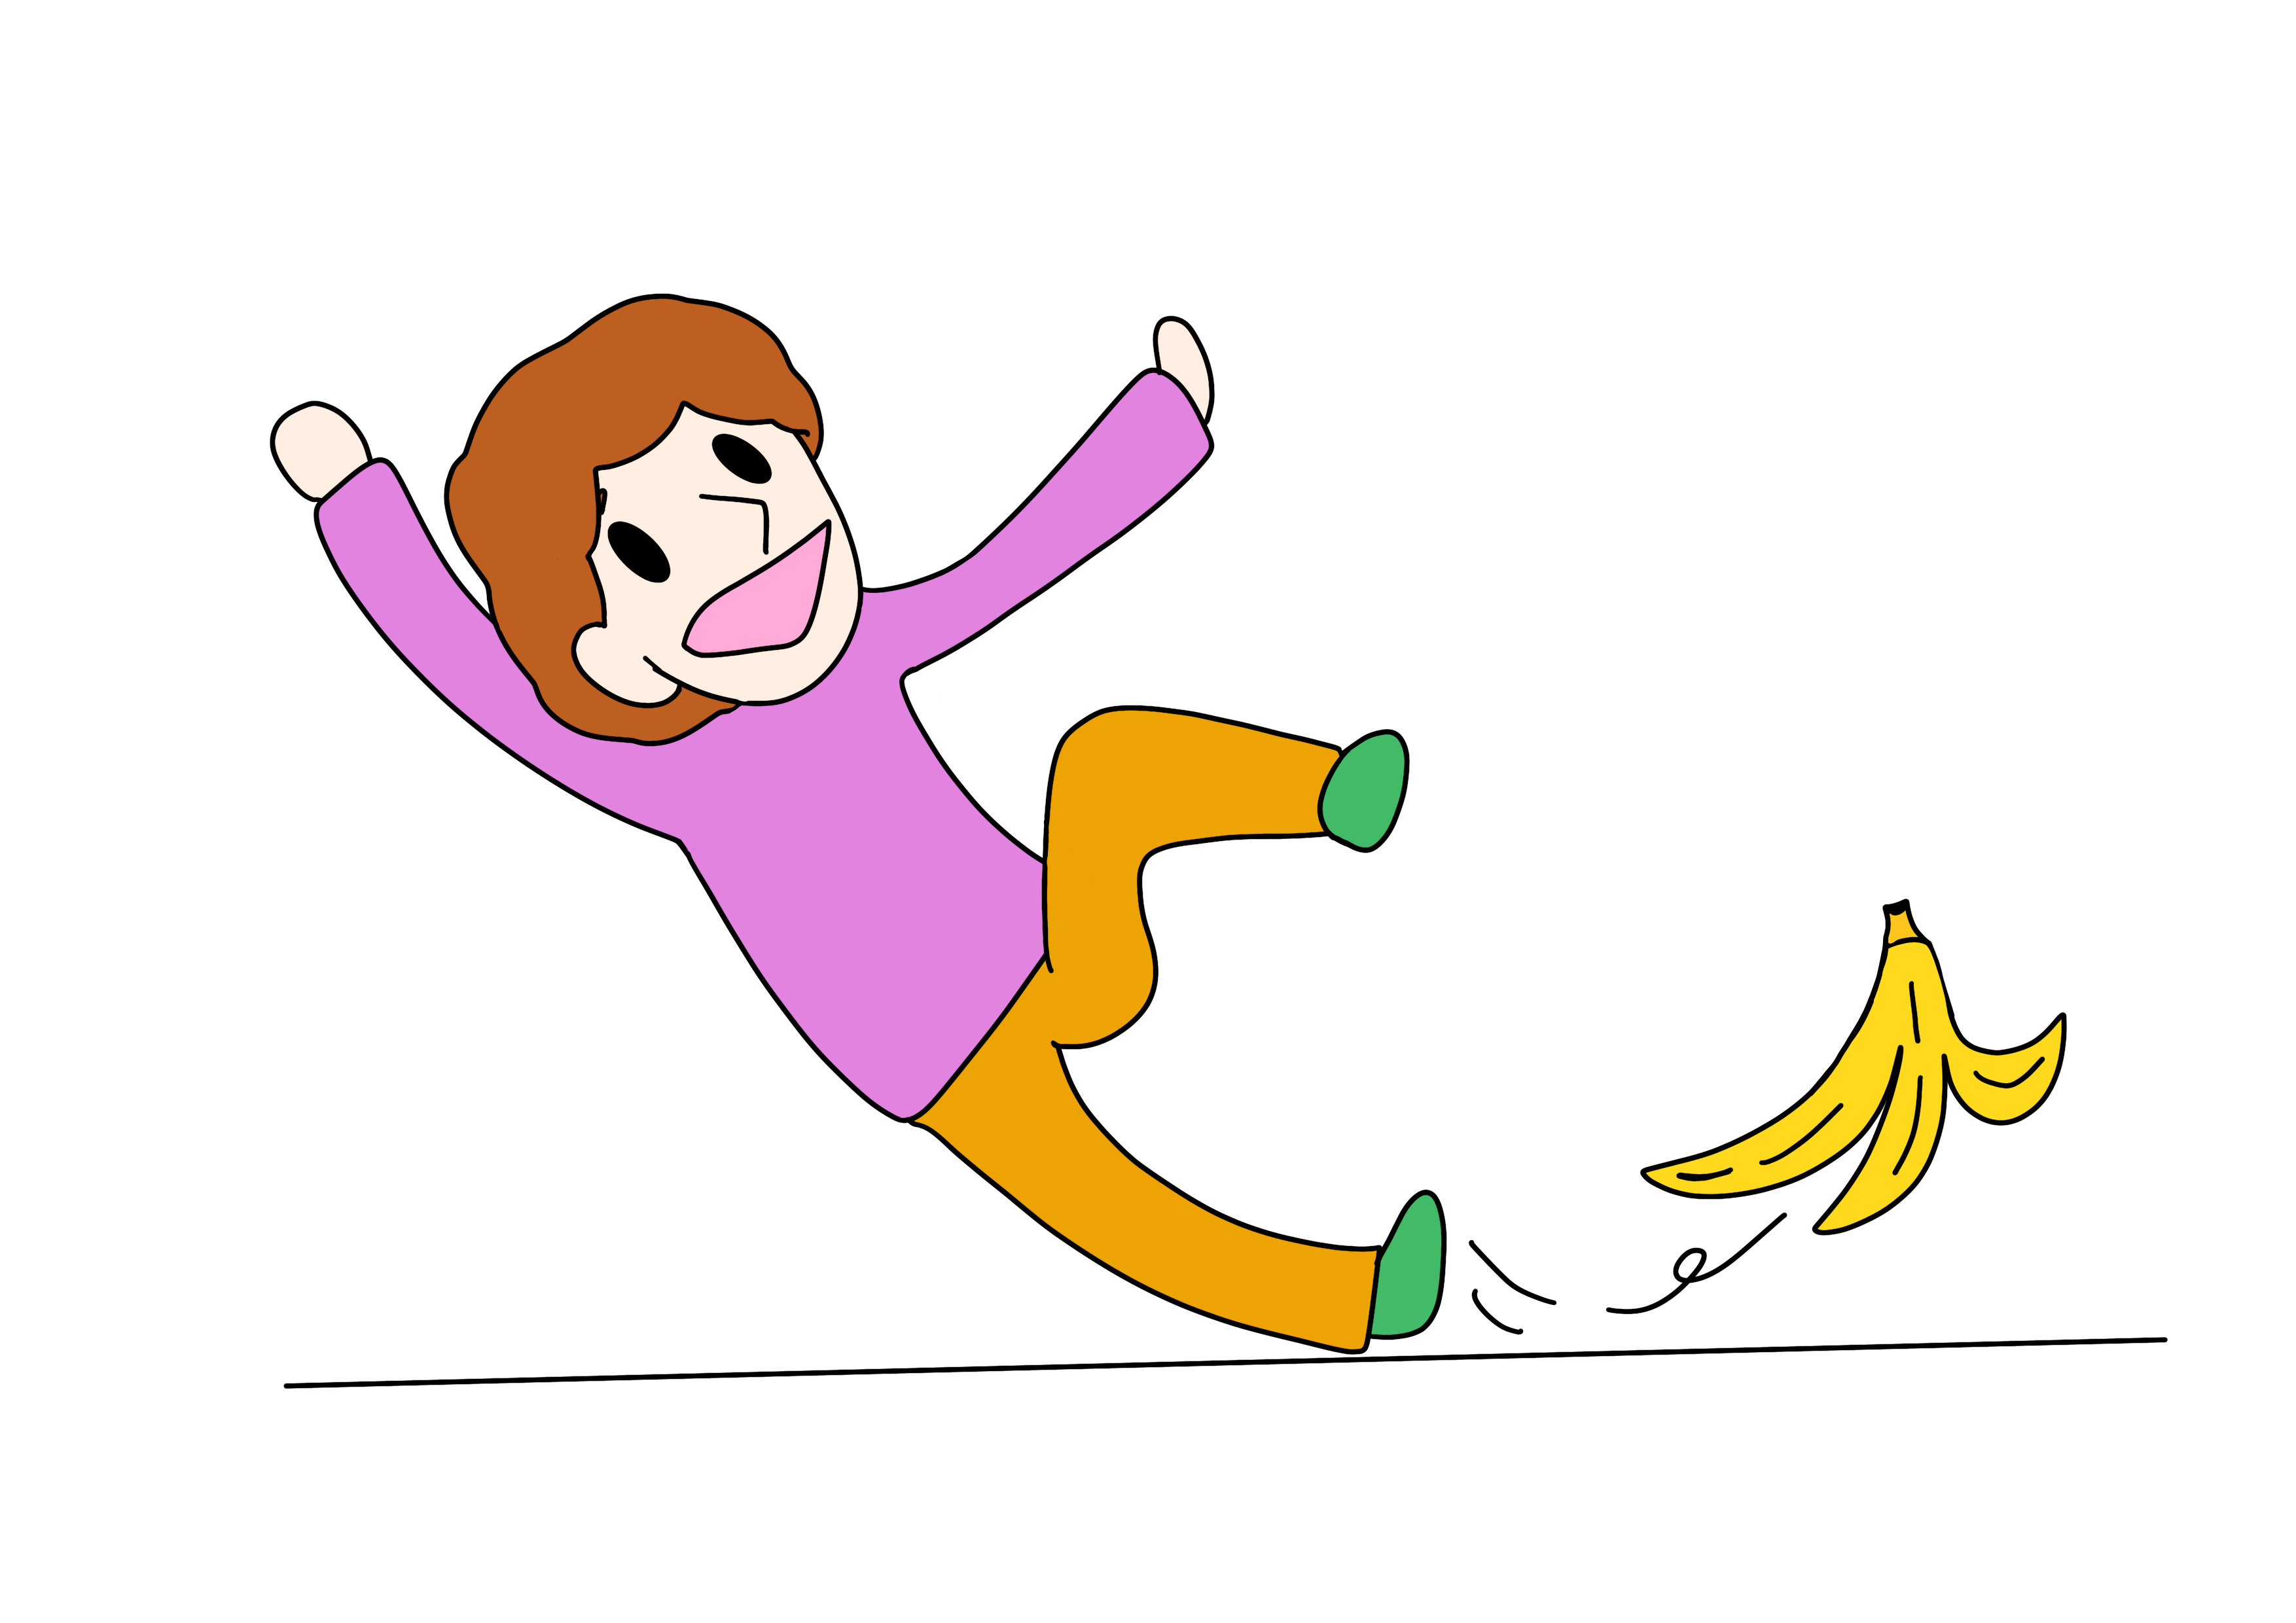 44課イラスト【バナナの皮で滑る】